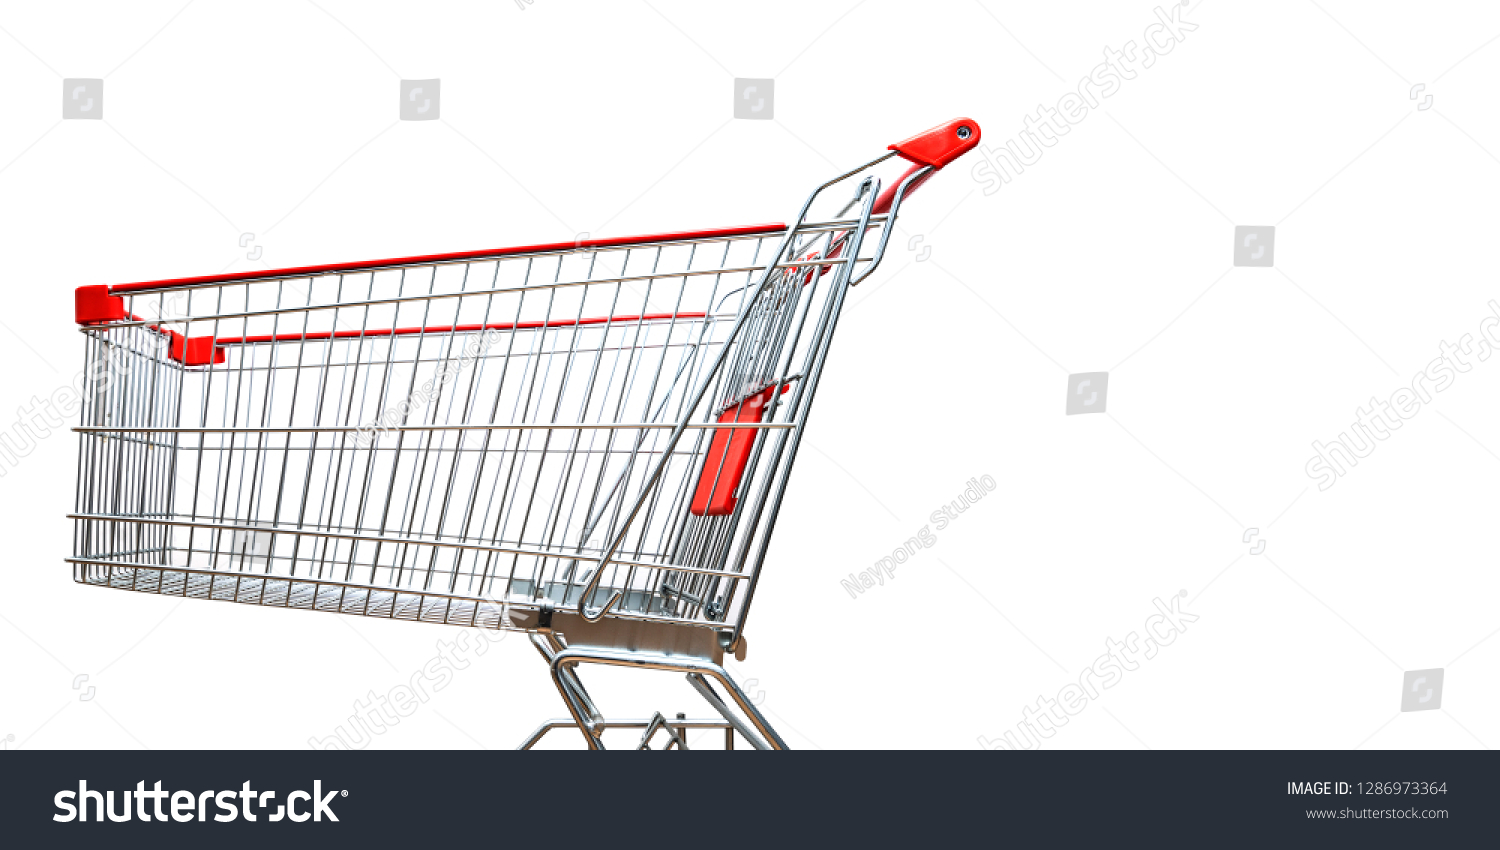 Shopping cart isolated on white background #1286973364